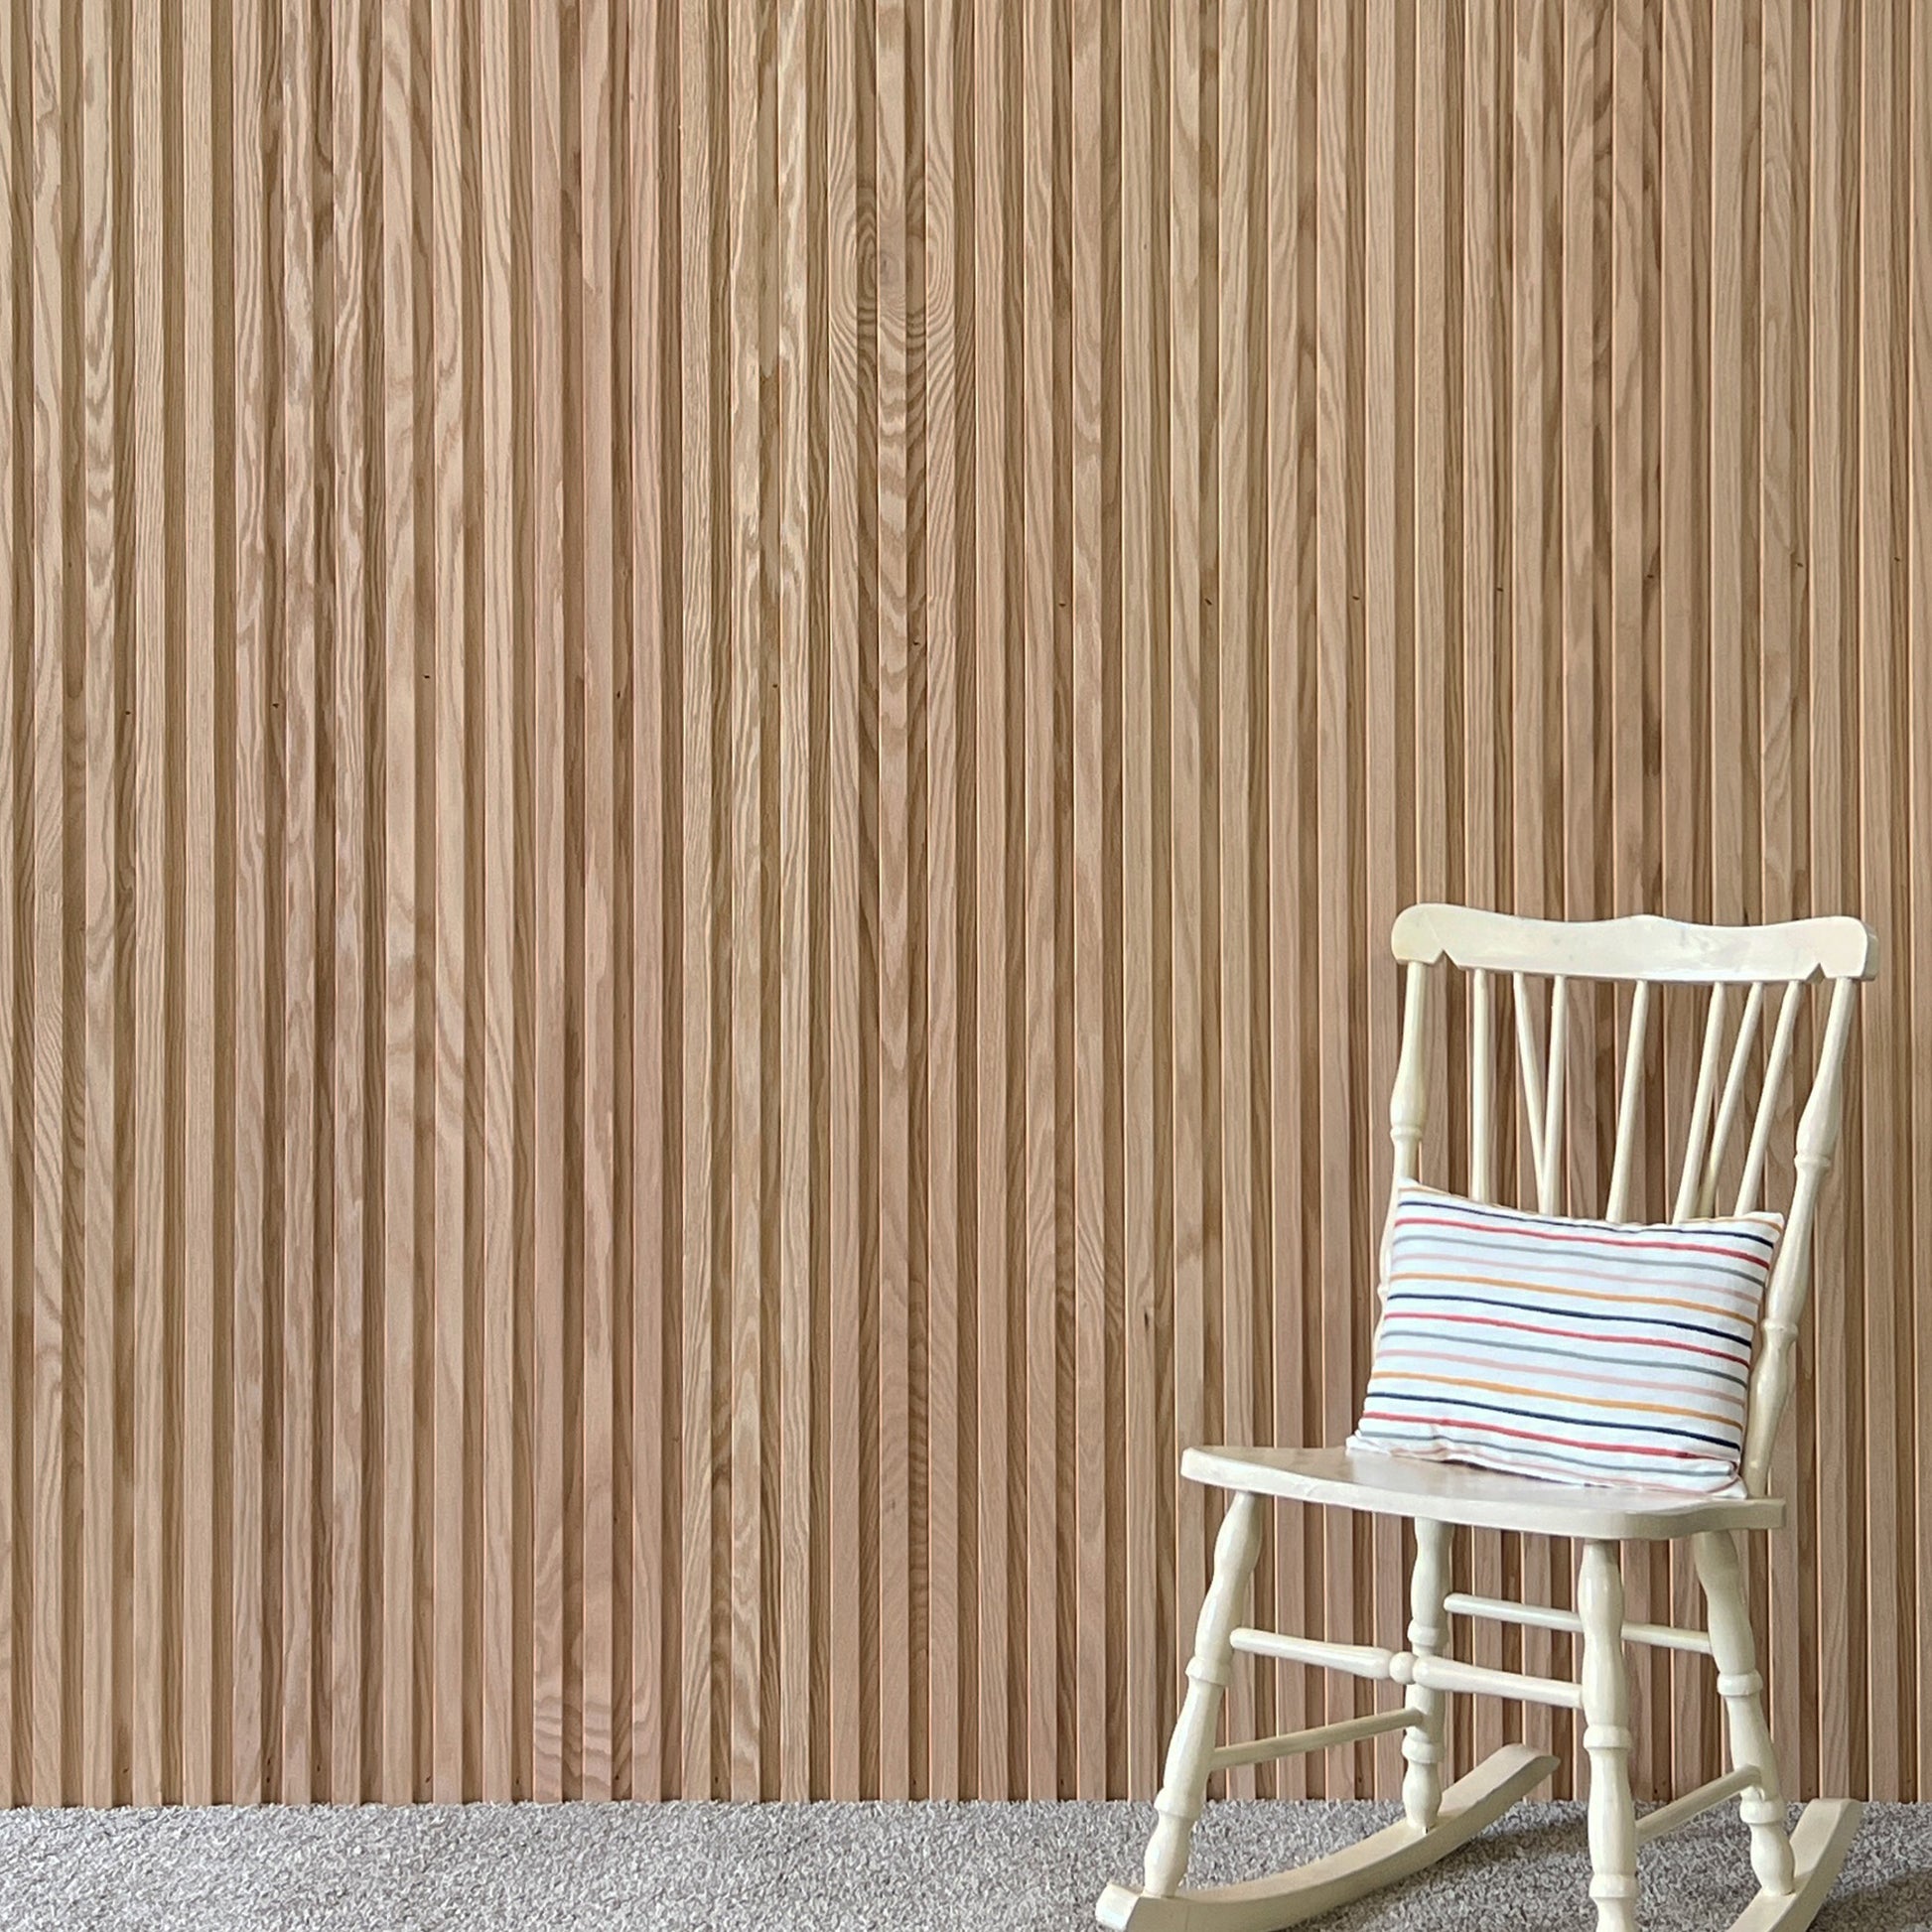 Wood Slat Wall